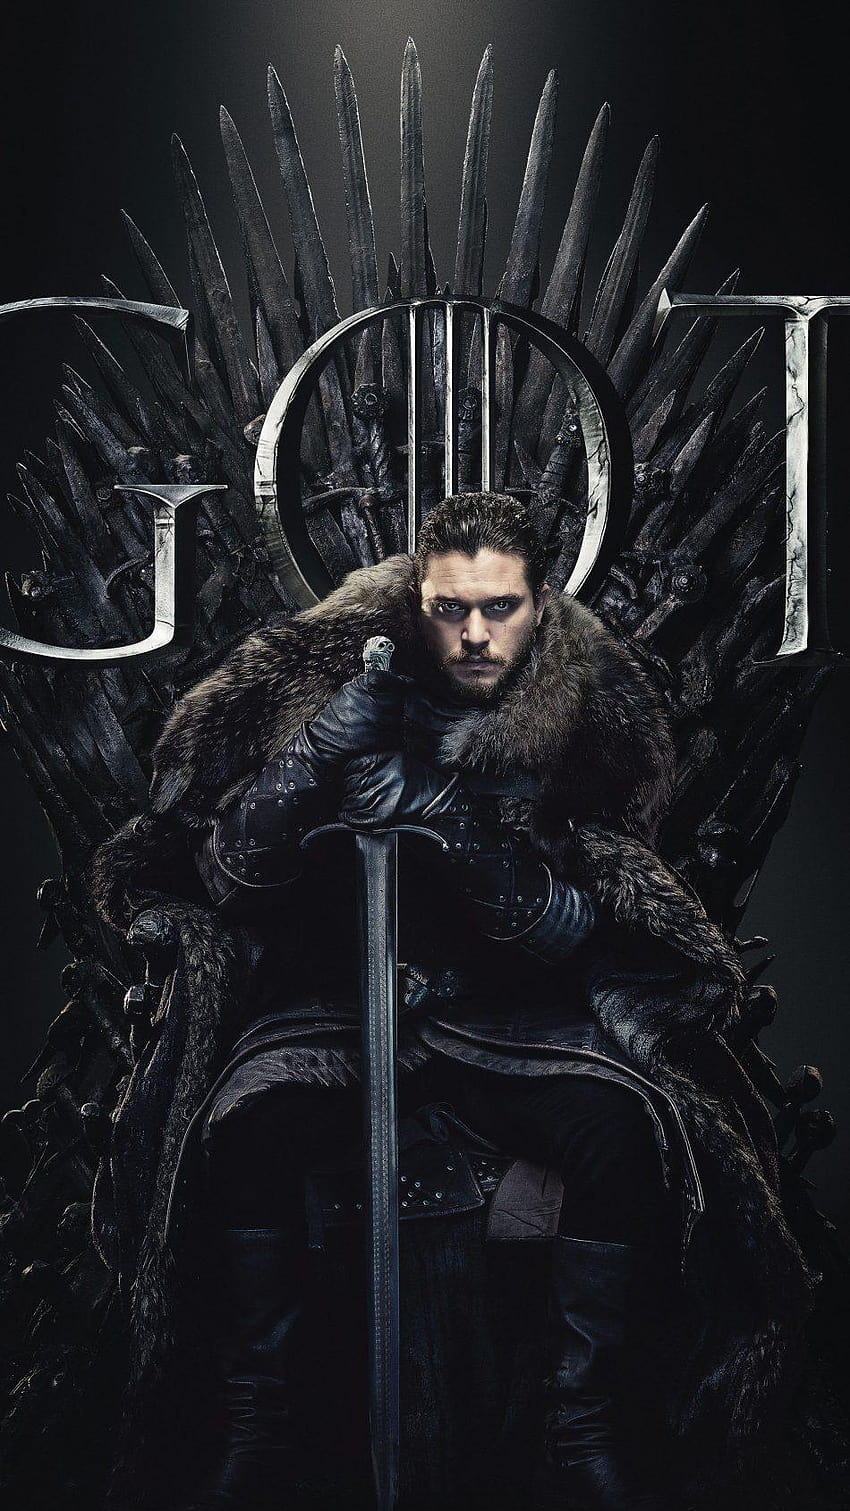 Mejor calidad Jon Snow en Juego de tronos Temporada 8 U, juego de tronos teléfono fondo de pantalla del teléfono